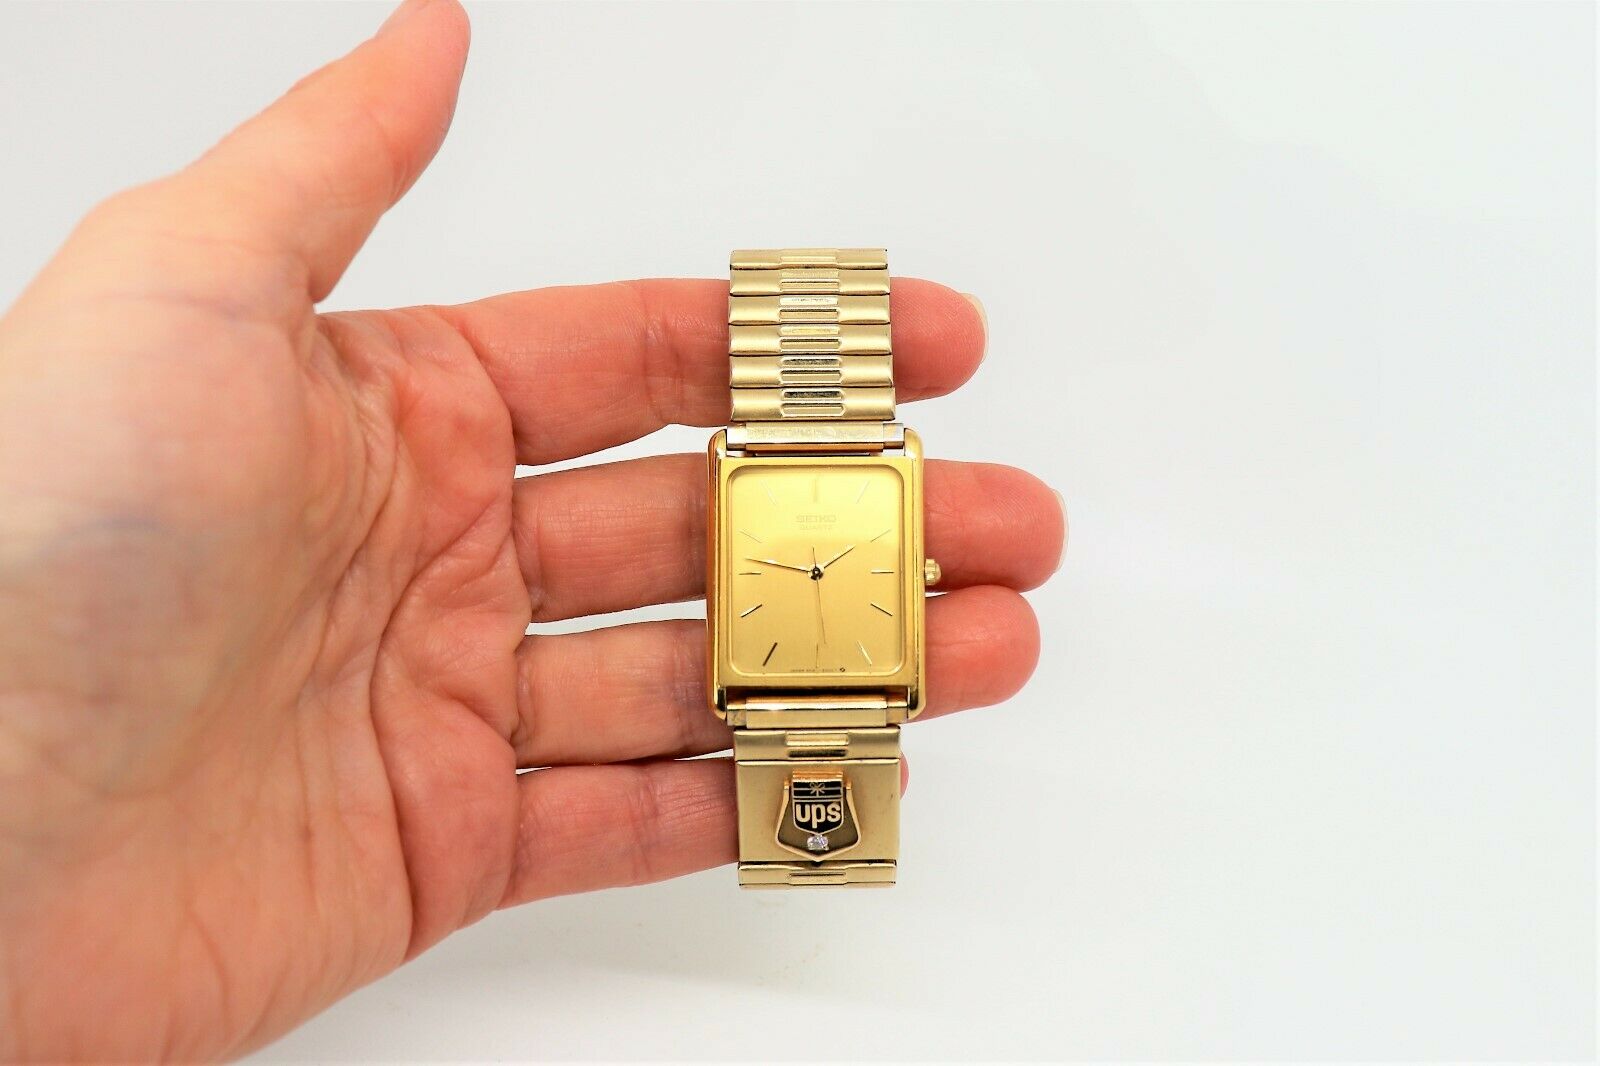 KAFEUPS Watch Stainless Steel Wristband Men's Watch Quartz Watch Gift  Winner Watch - Walmart.com